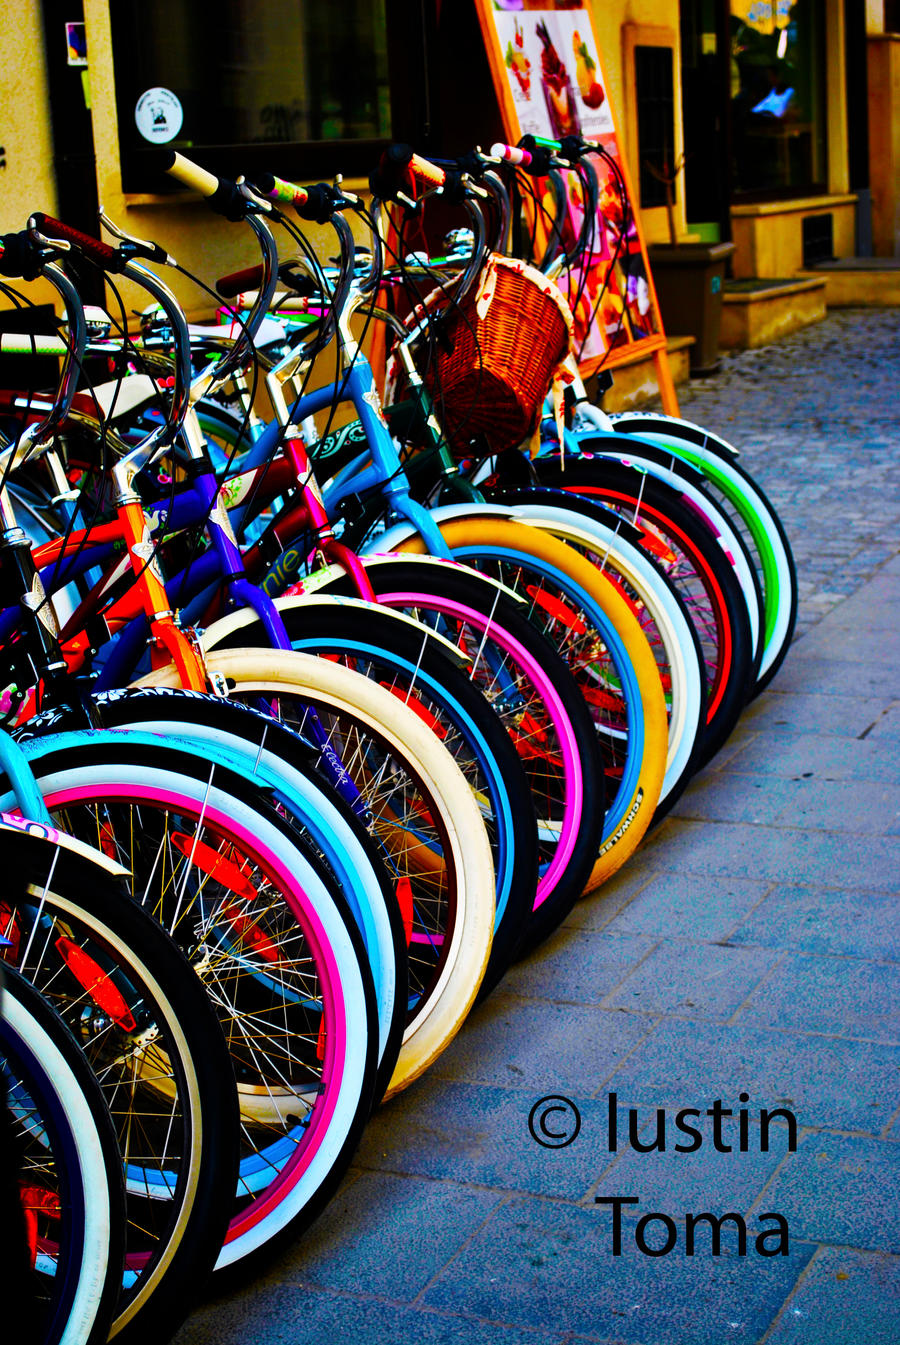 Bikes,bikes,bikes